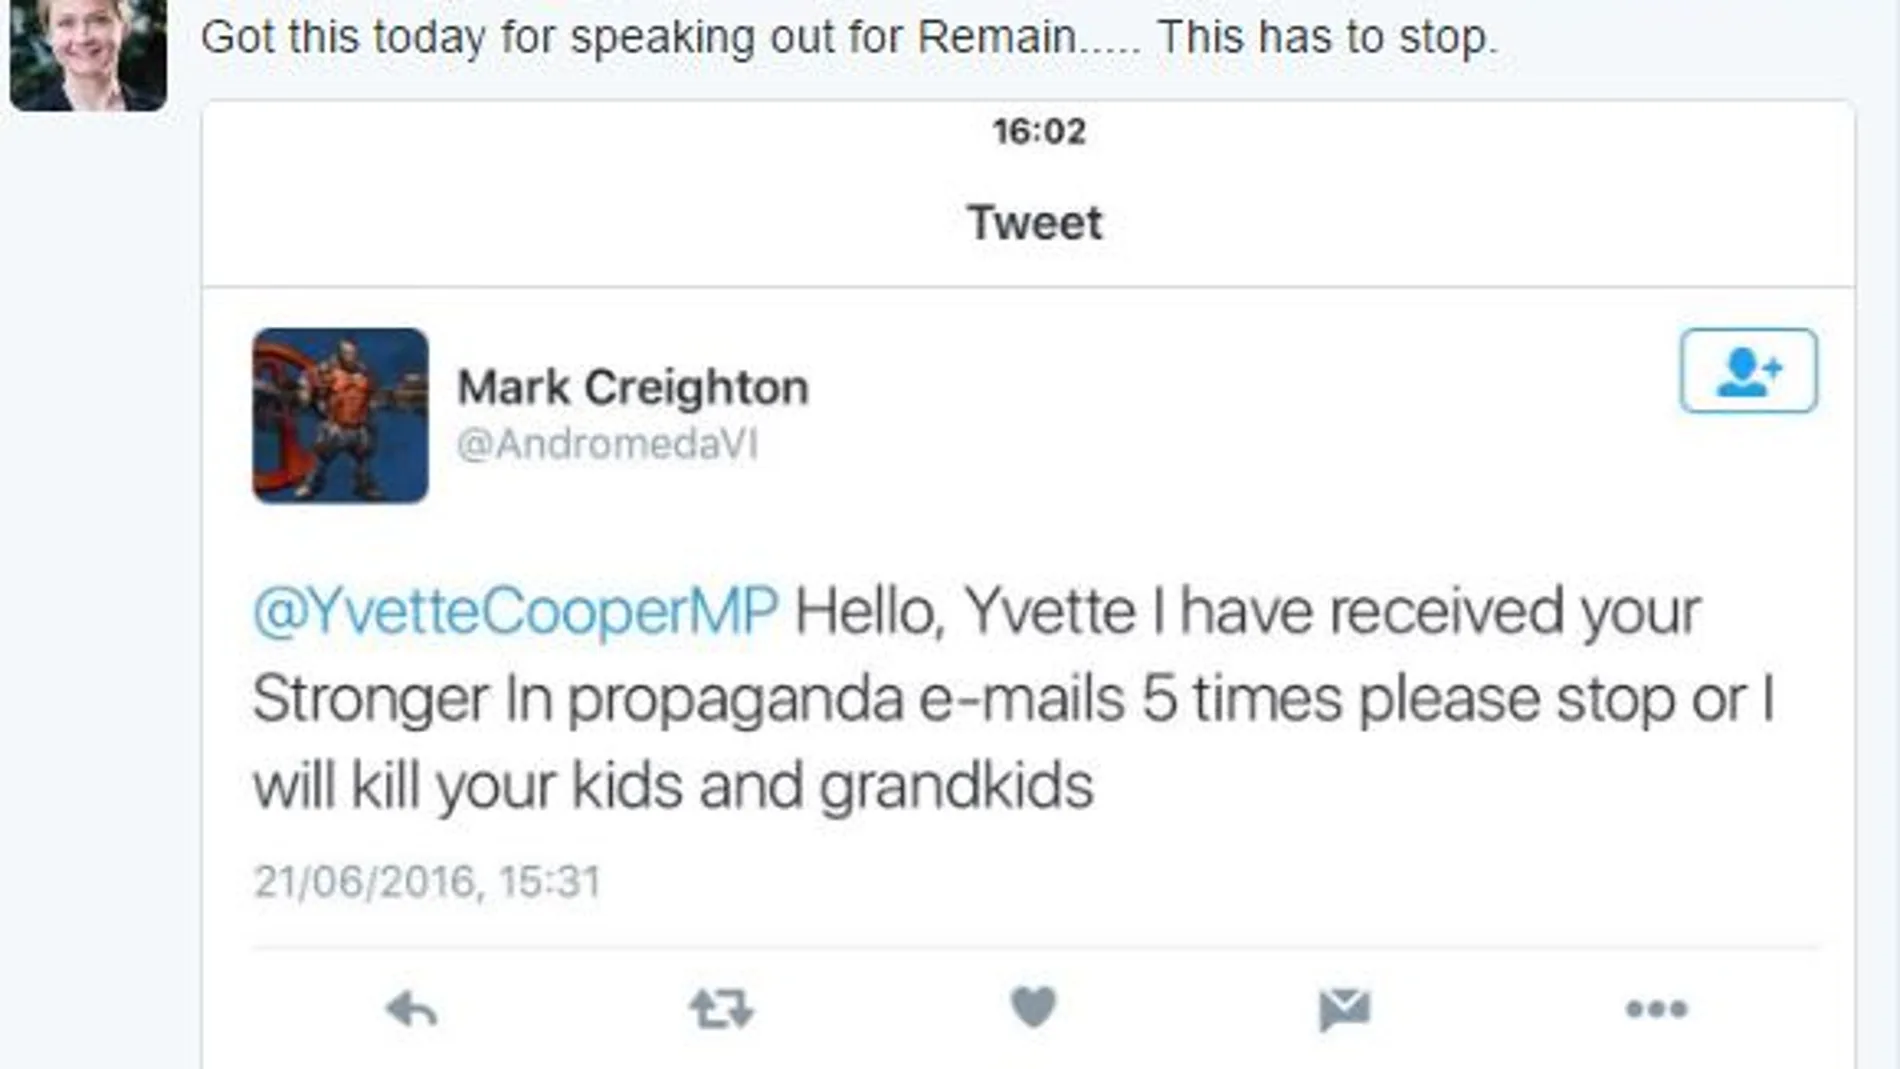 Amenazan en un tuit a una diputada británica con matar a sus hijos y nietos